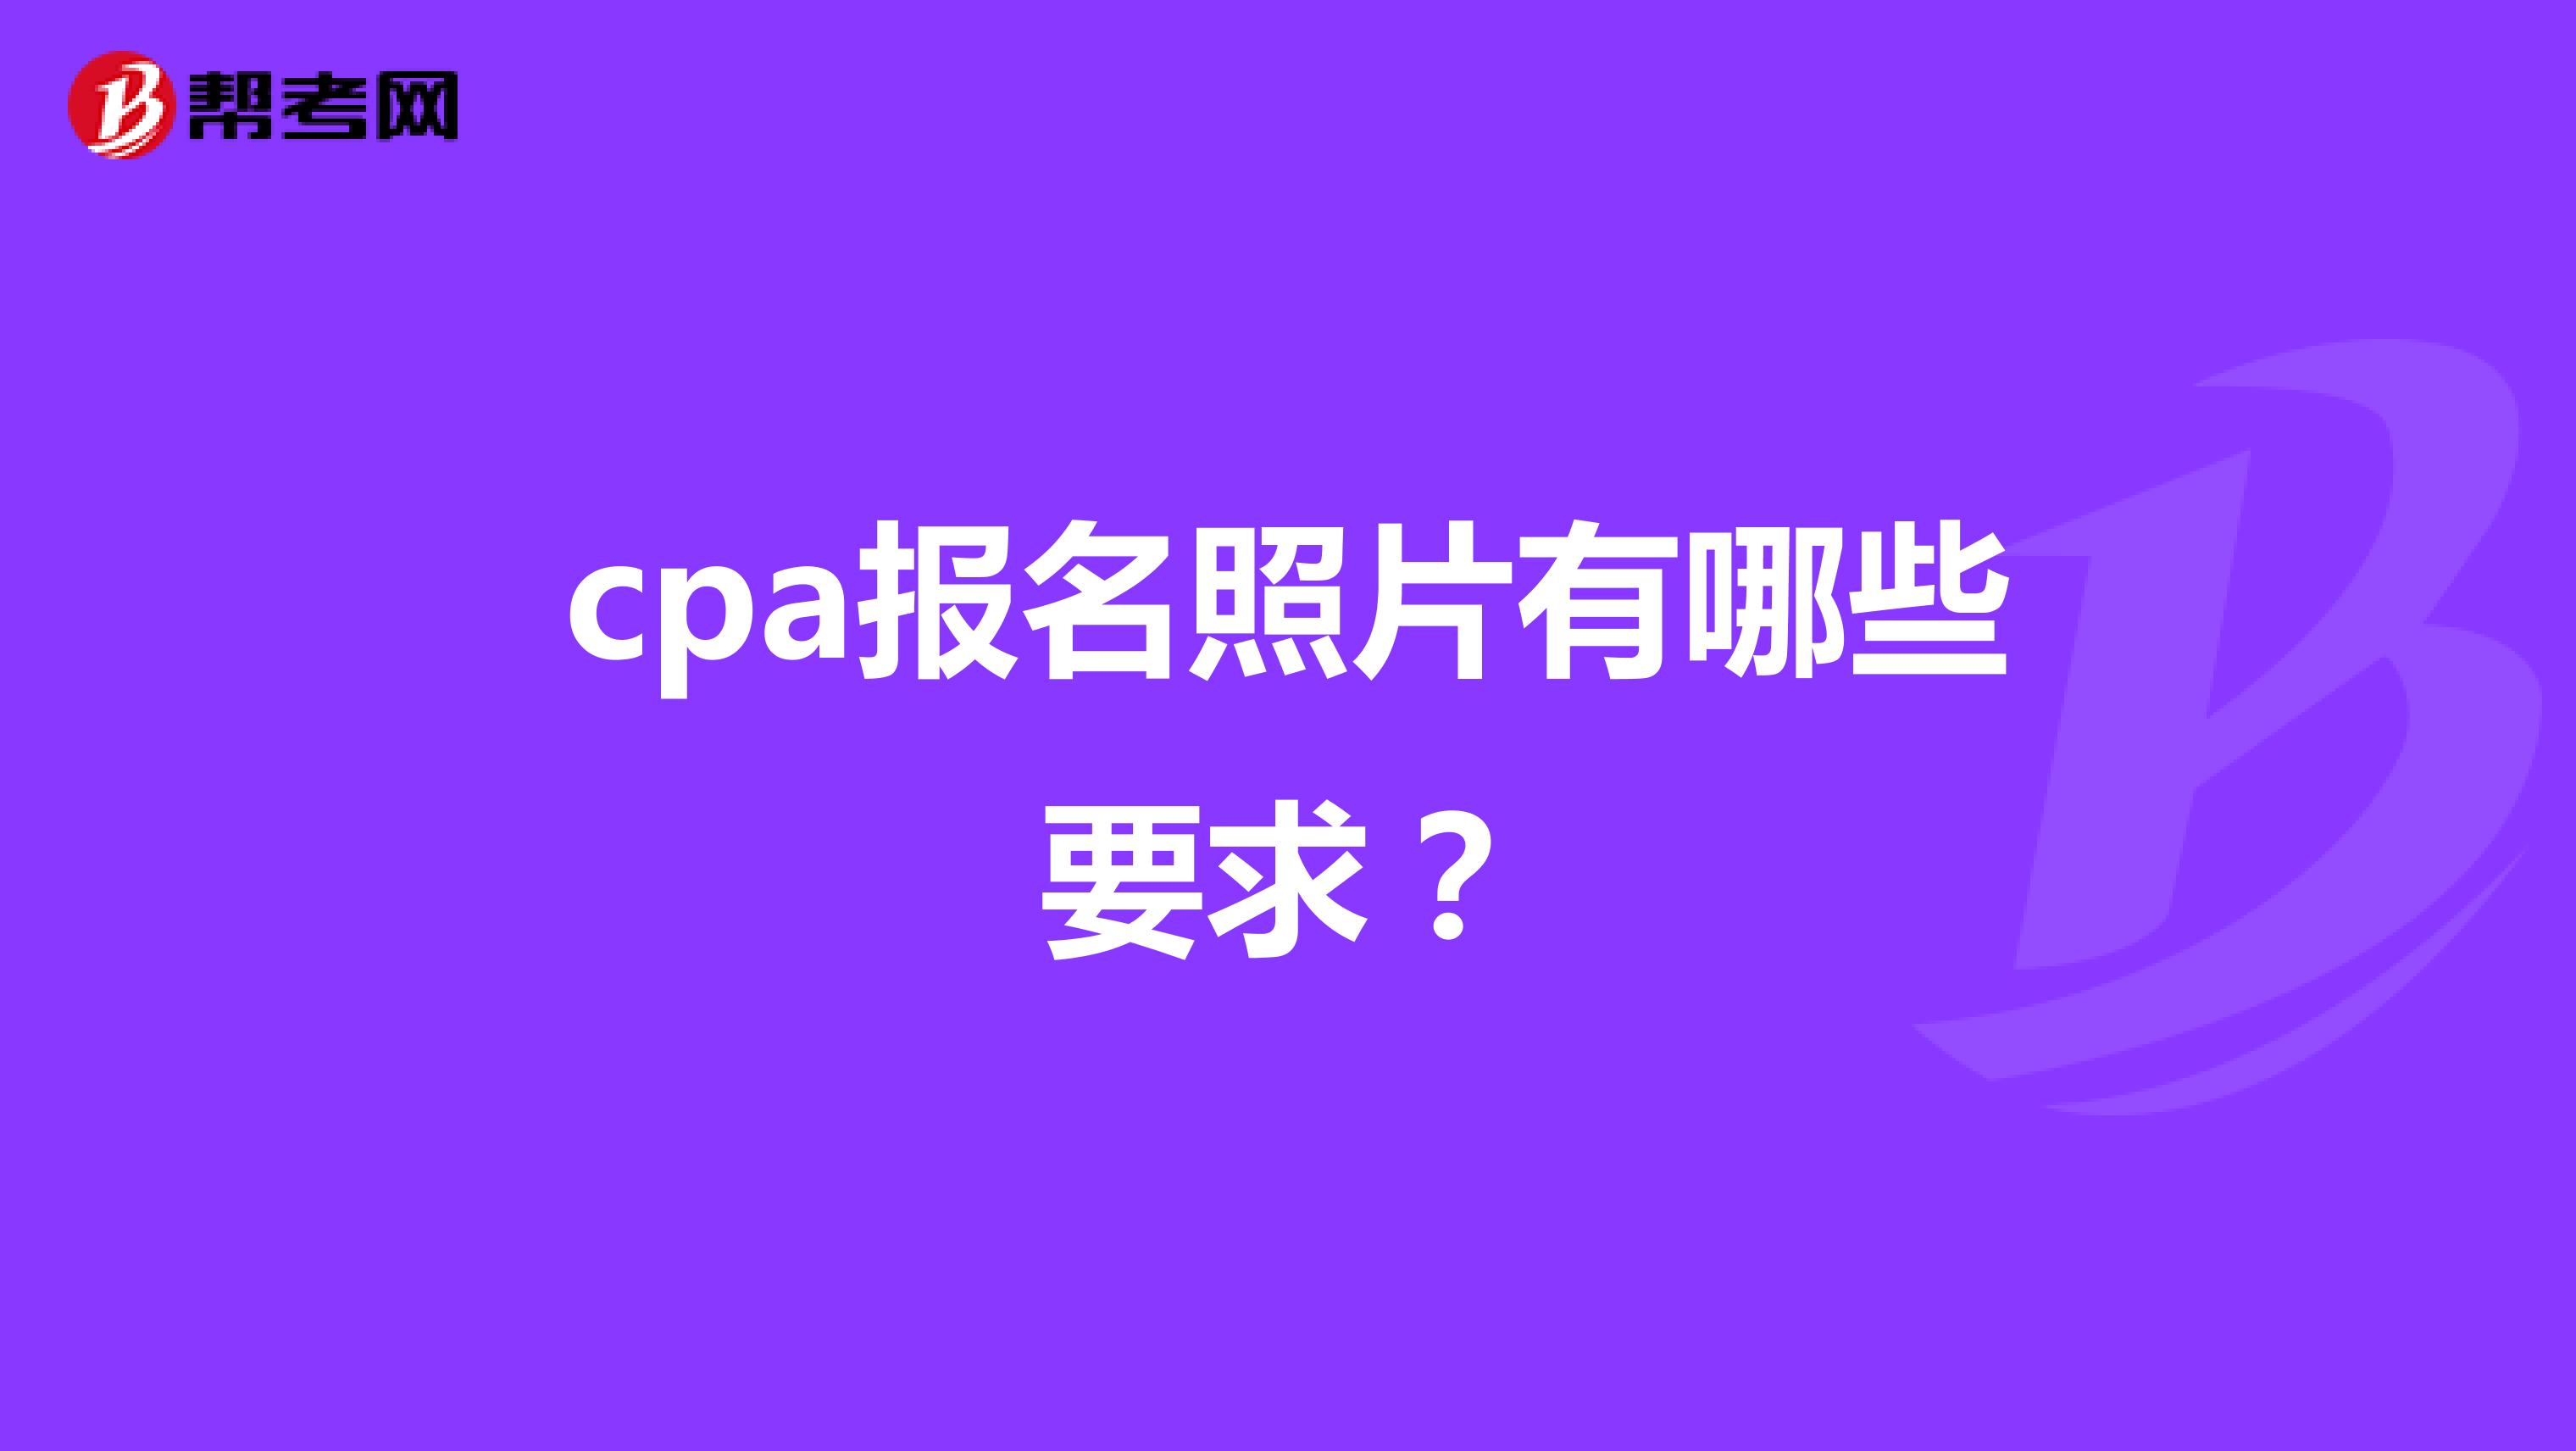 cpa报名照片有哪些要求？